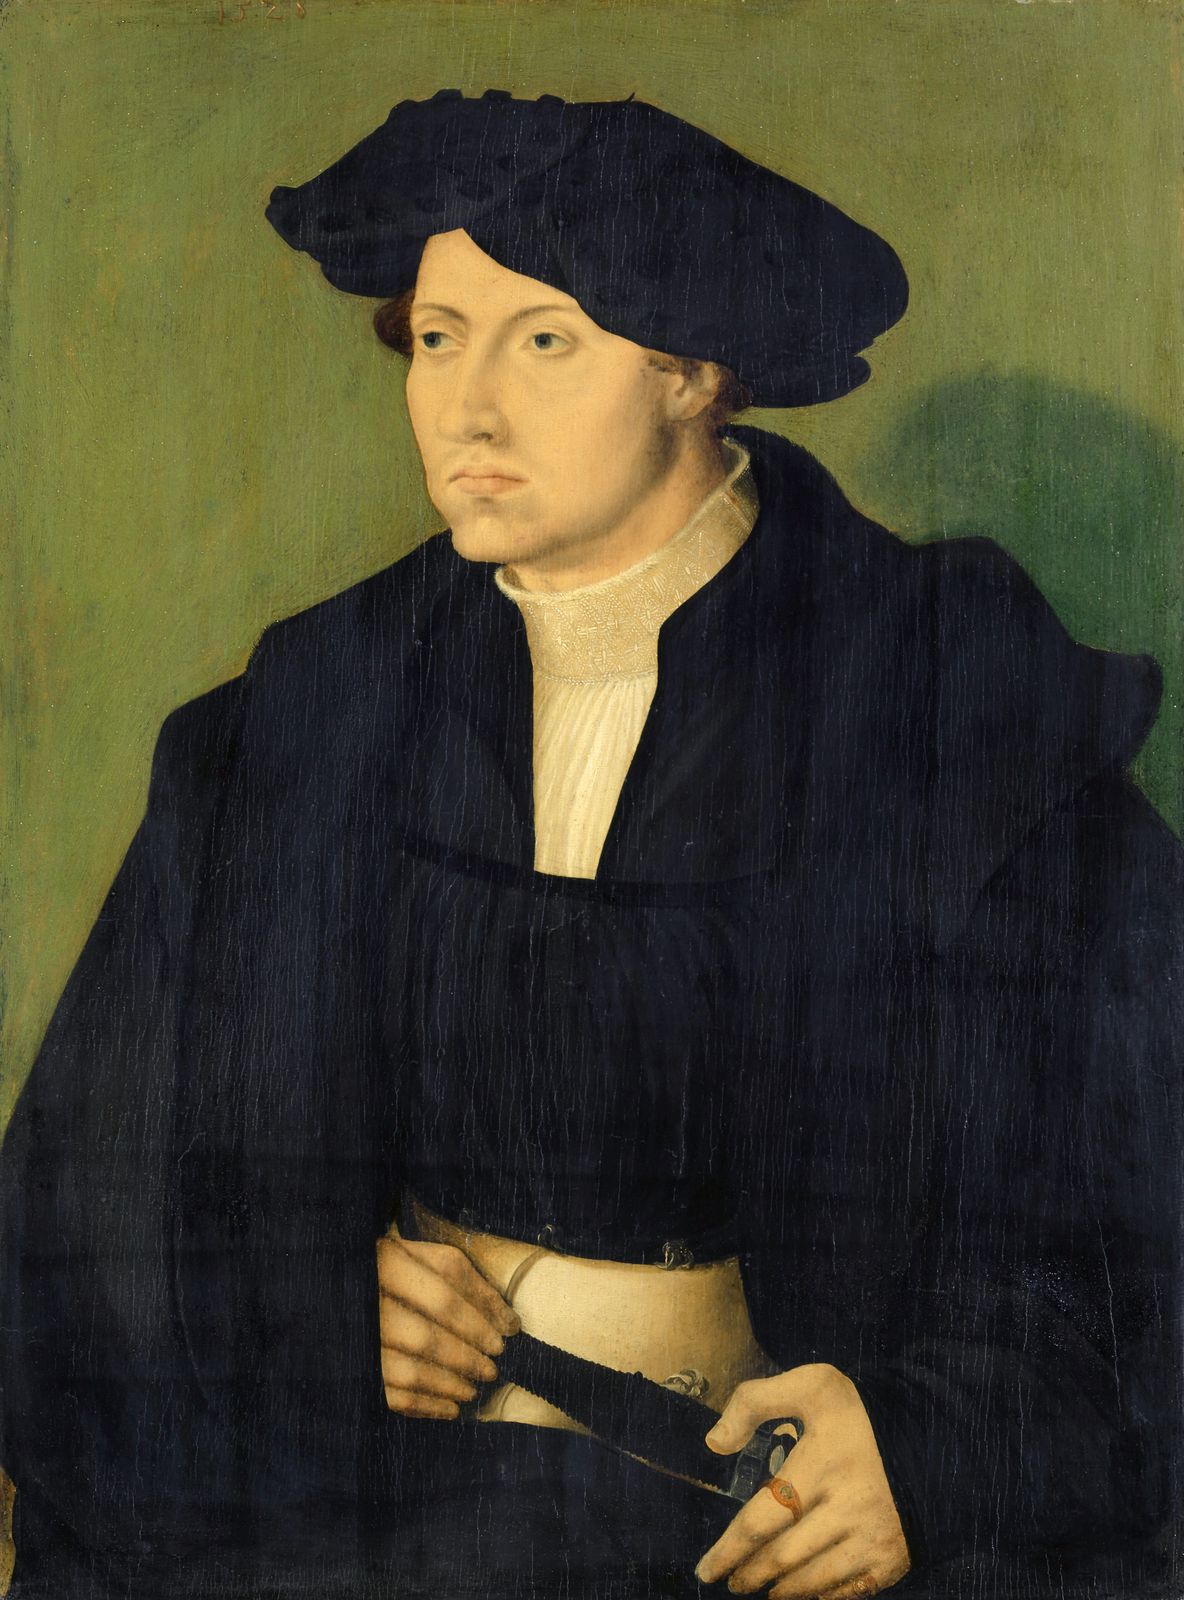 Bildnis eines Mannes in schwarzer Kleidung